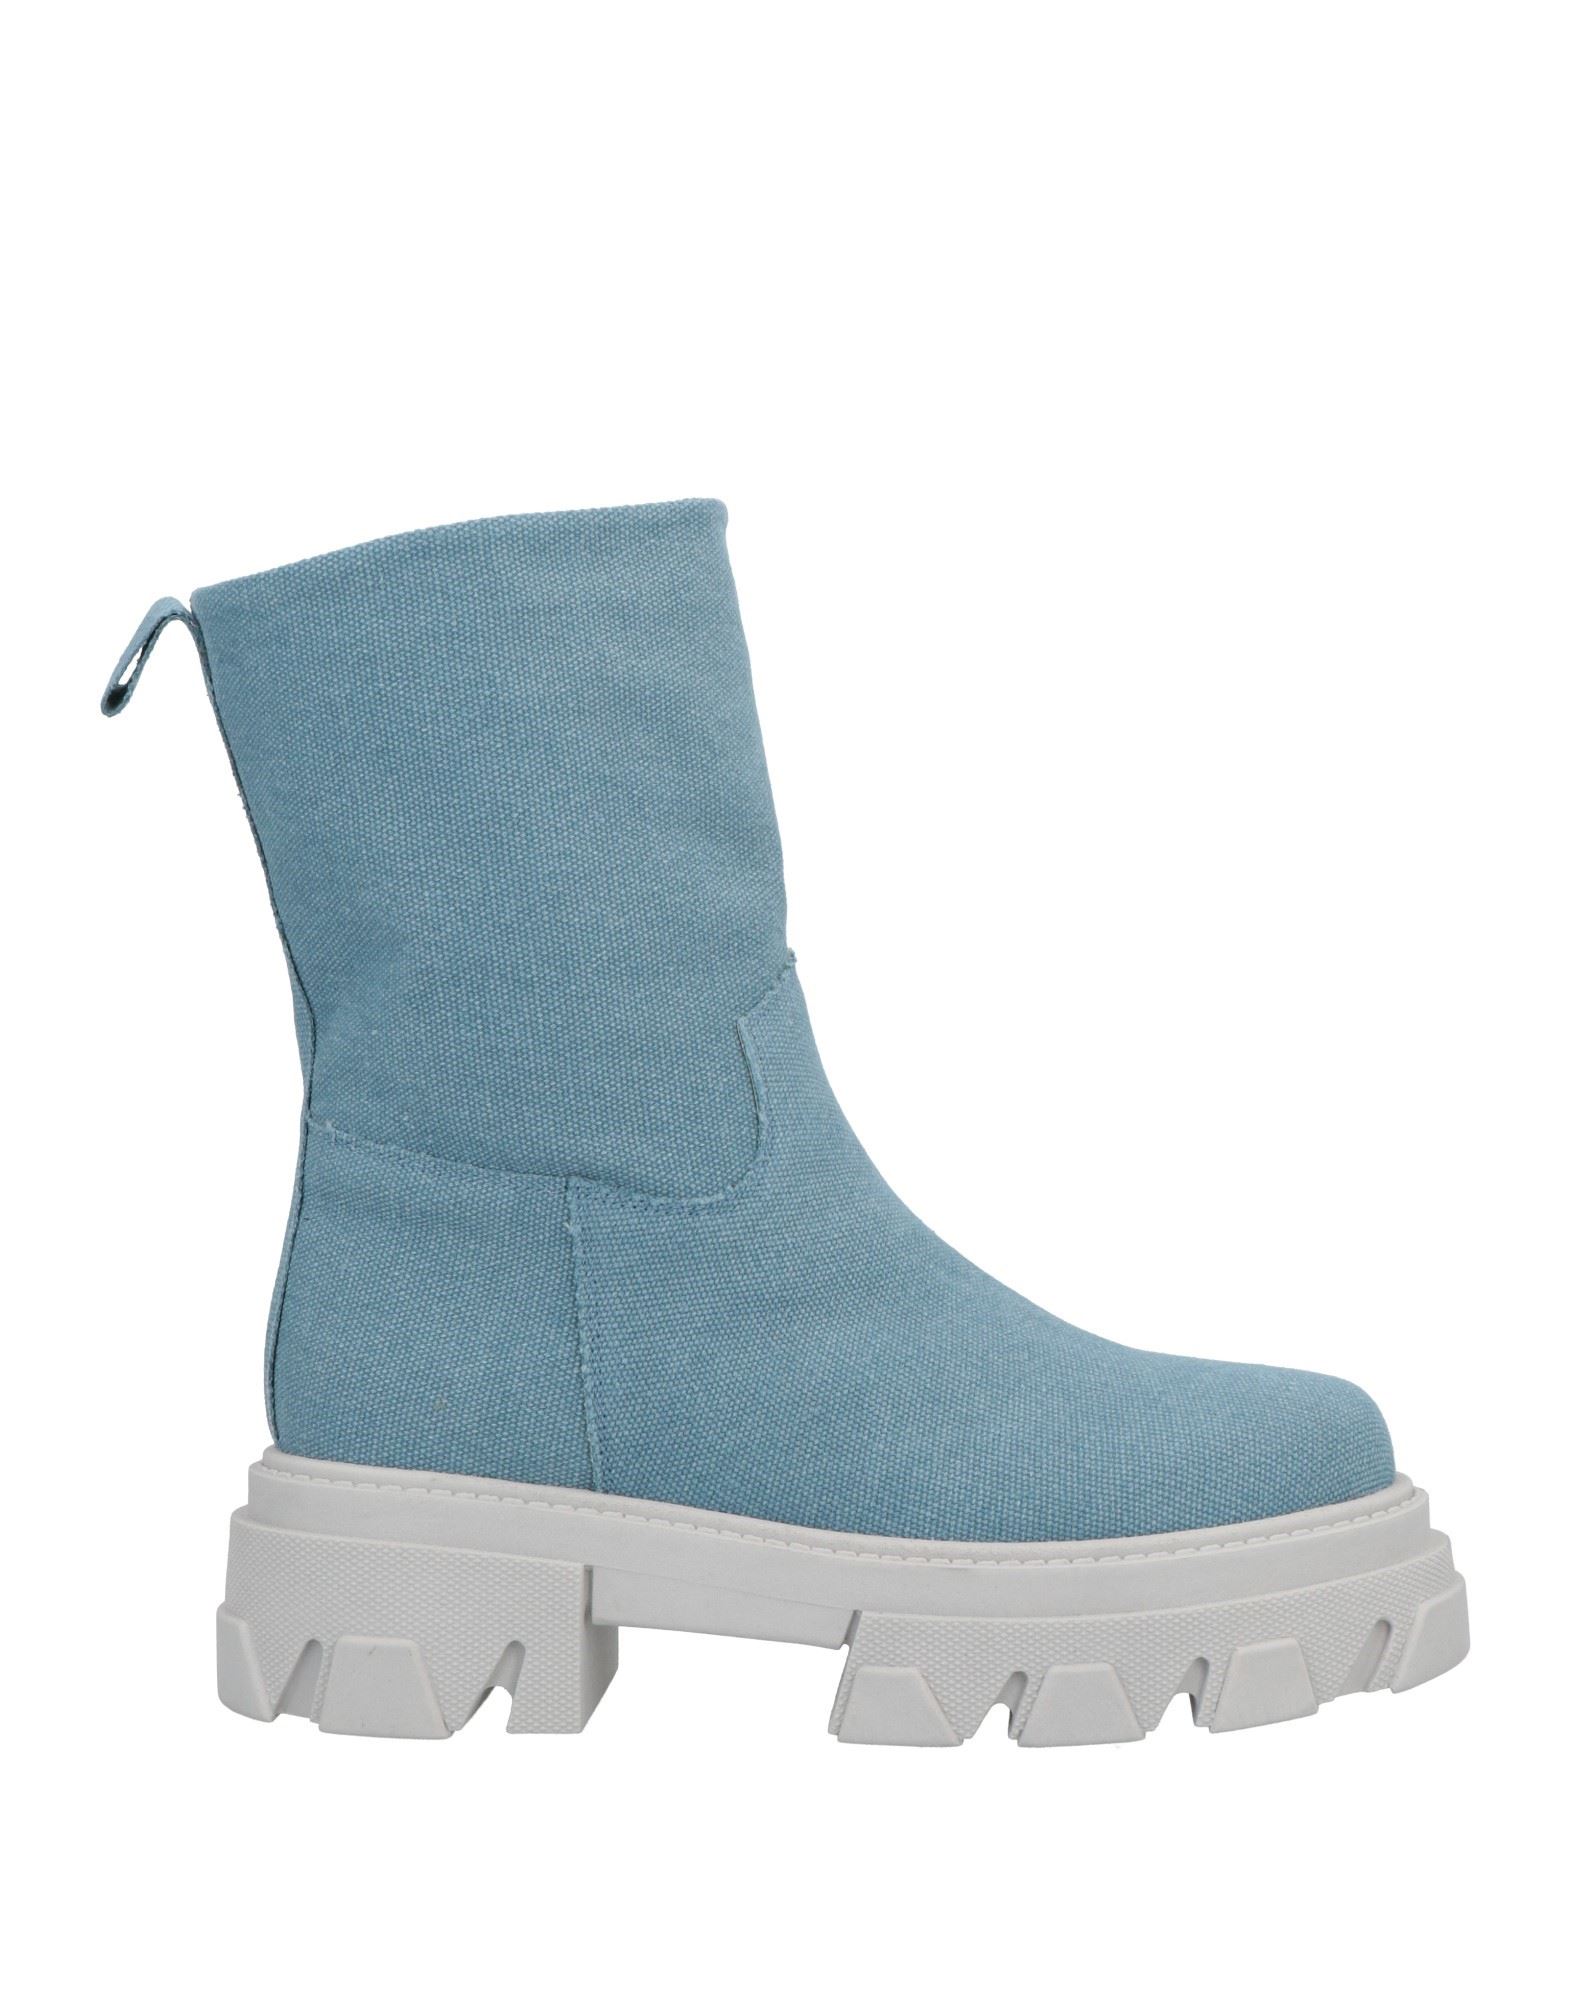 Shop Unlace Woman Ankle Boots Sky Blue Size 7 Textile Fibers